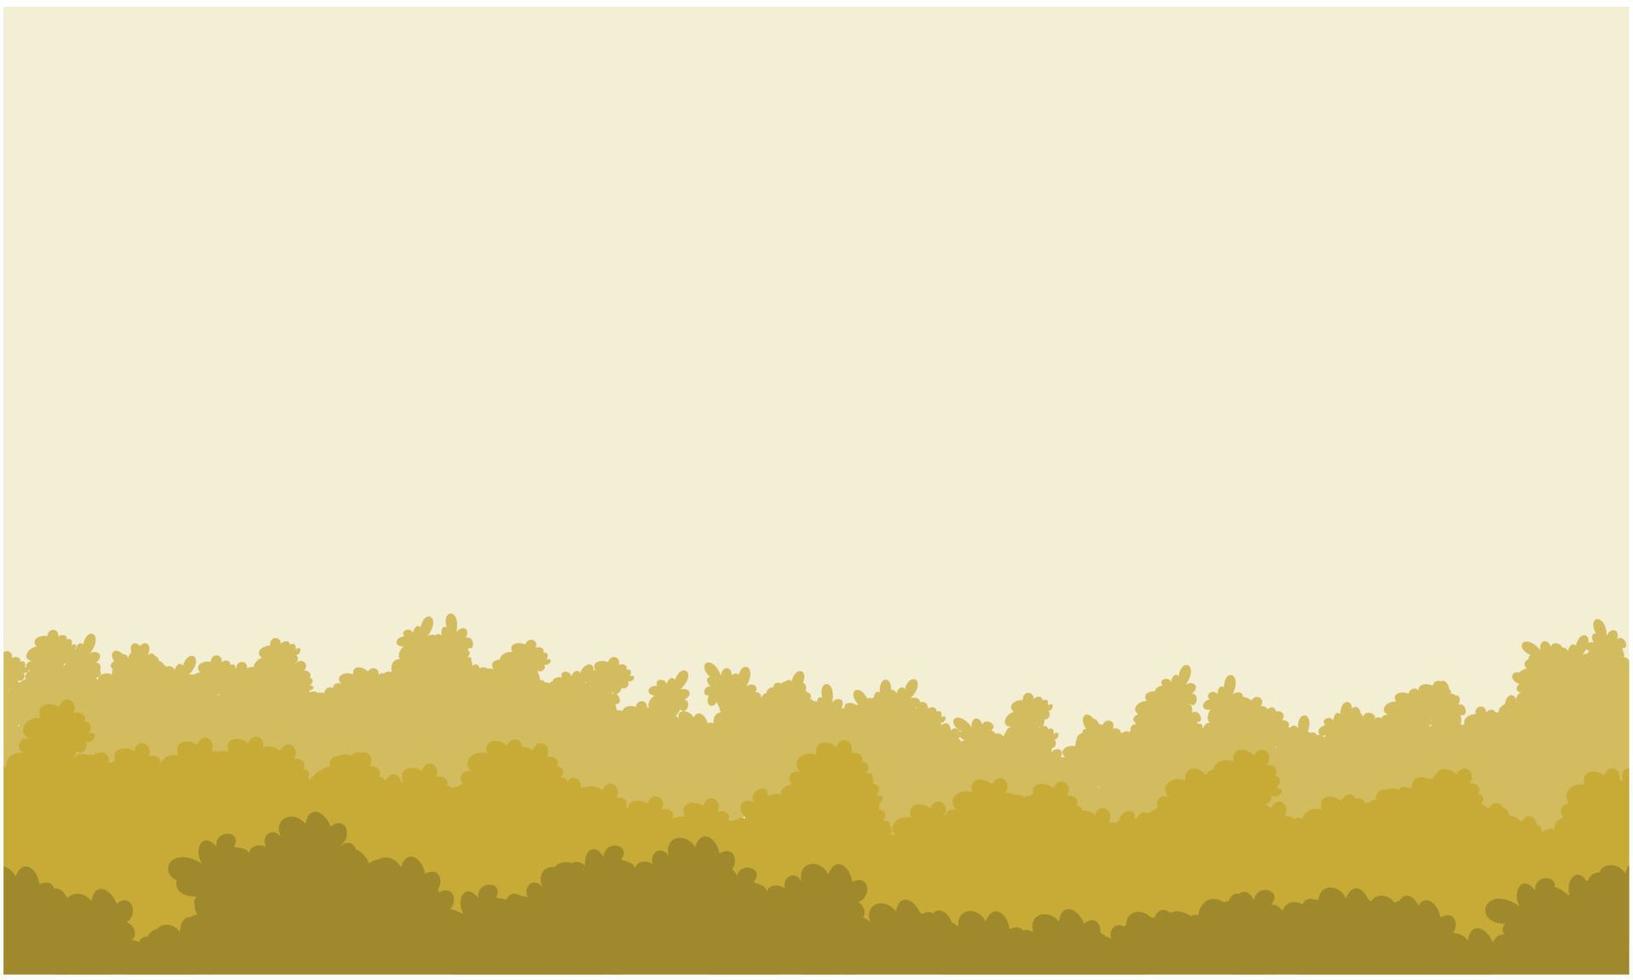 arbustos marrons desenhando paisagem vetor